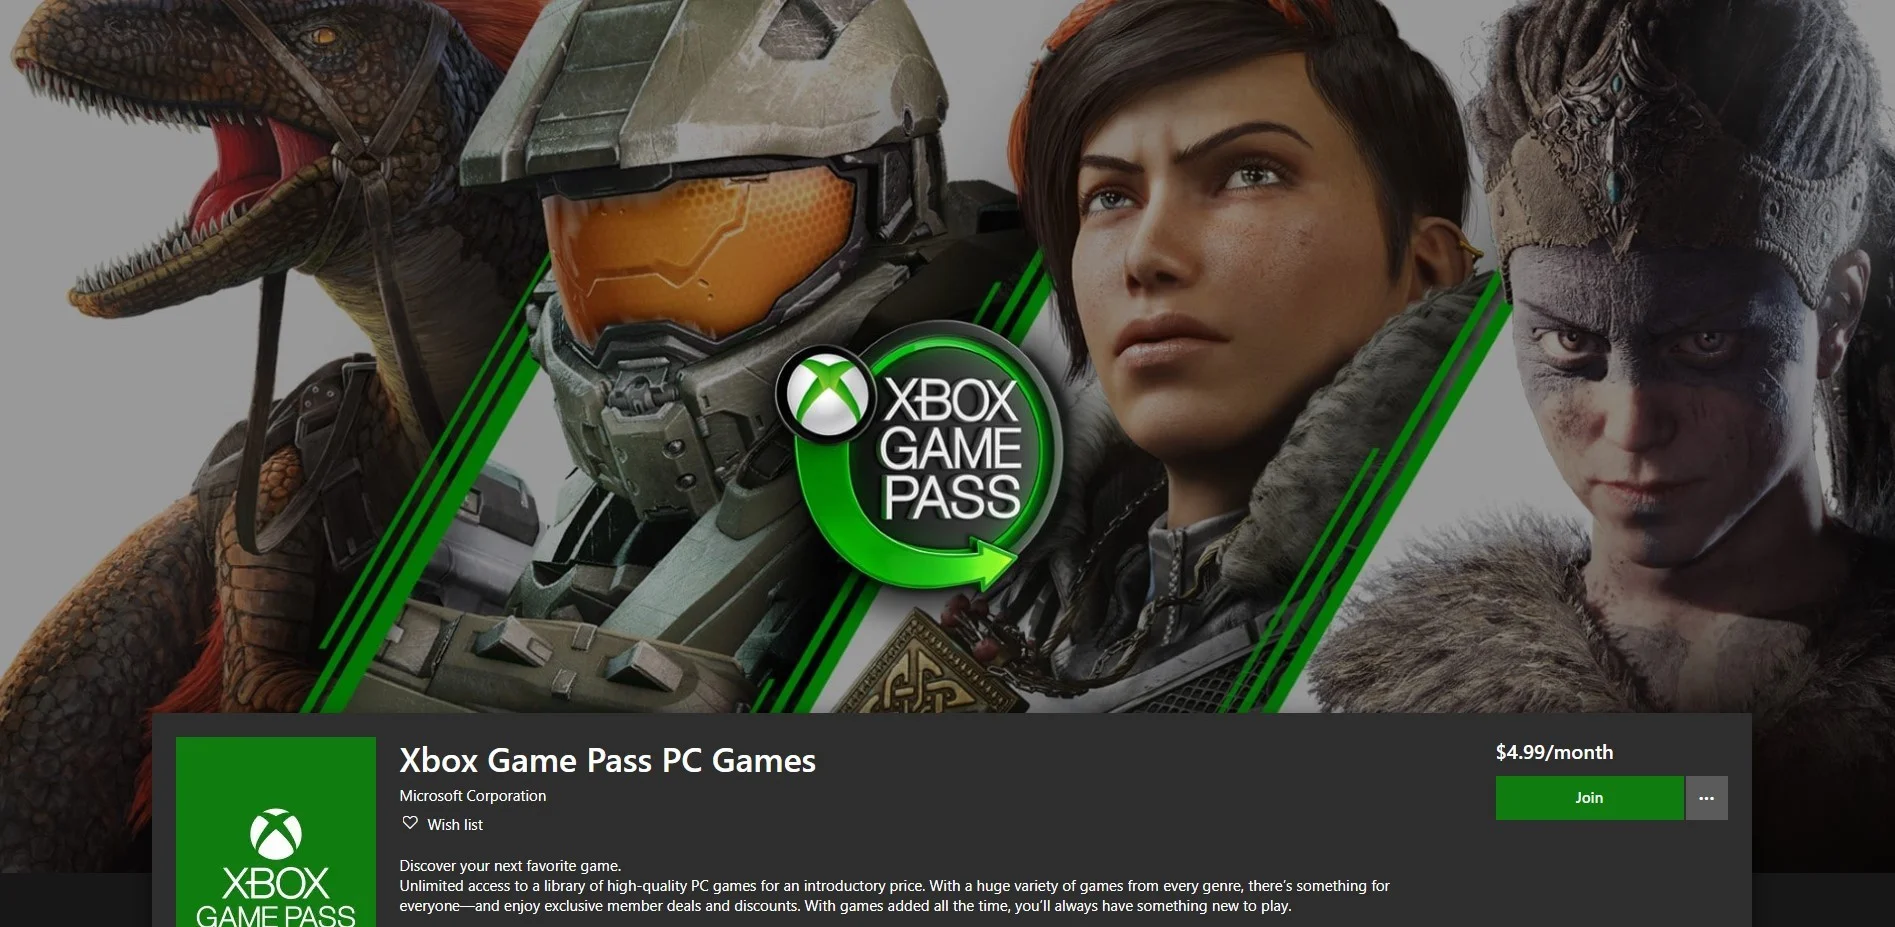 Стоимость и список проектов Xbox Game Pass для РС — сервис уже запустили - фото 2